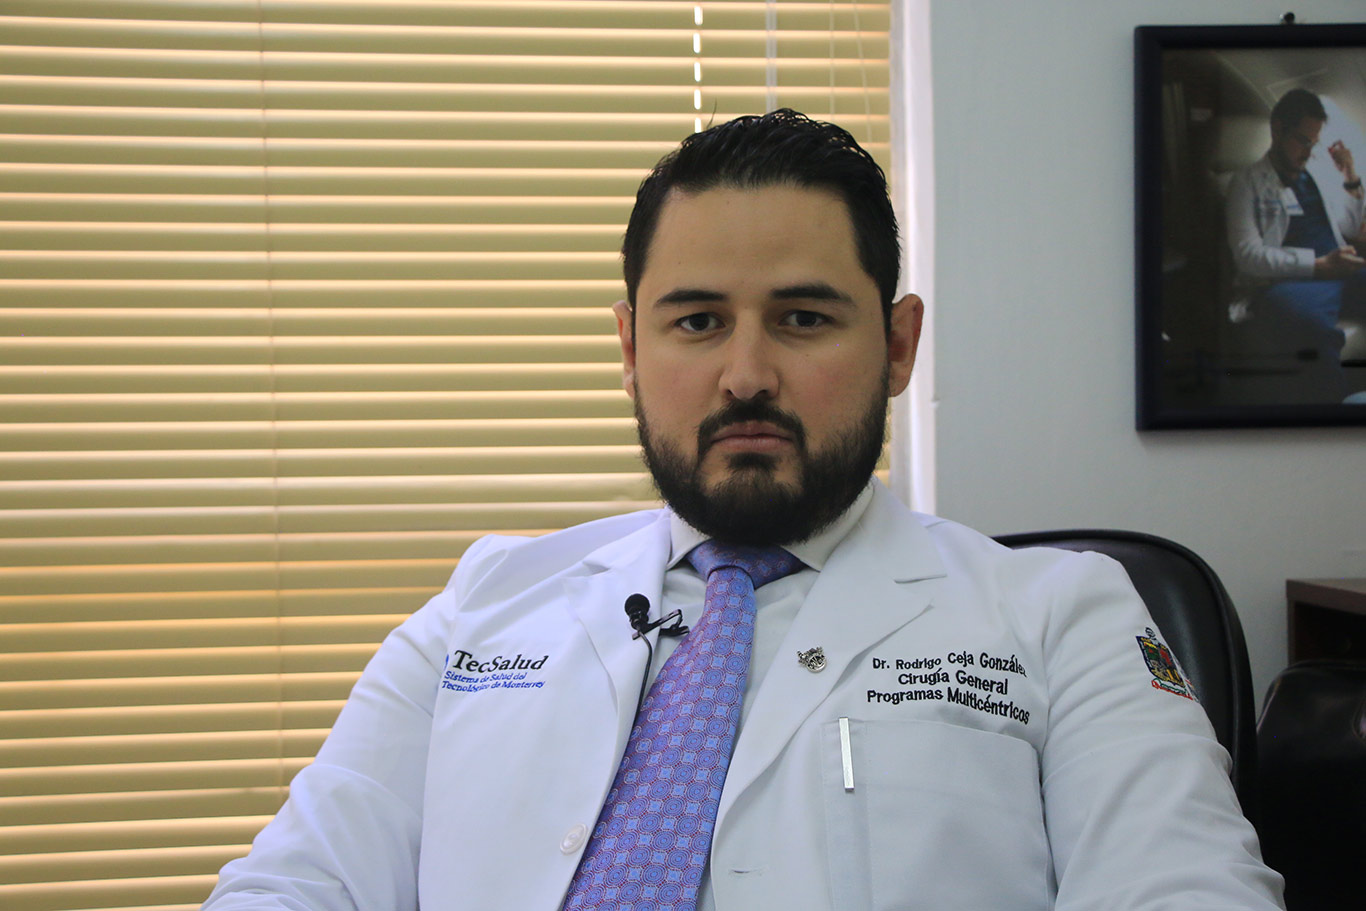 Dr. Rodrigo Ceja